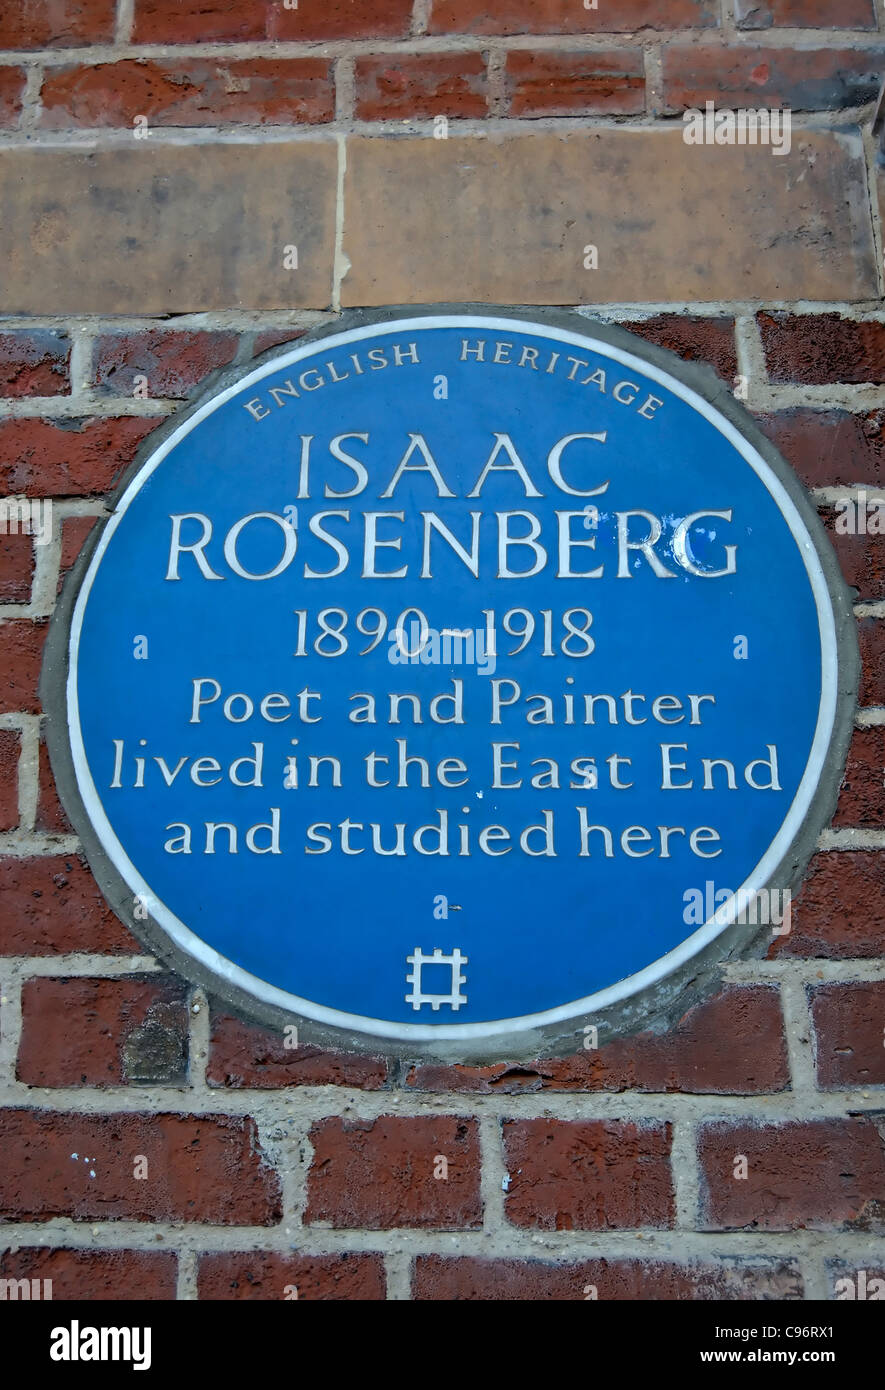 English Heritage blue plaque commémorant le poète et peintre isaac Rosenberg et ses liens avec l'East End londonien Banque D'Images